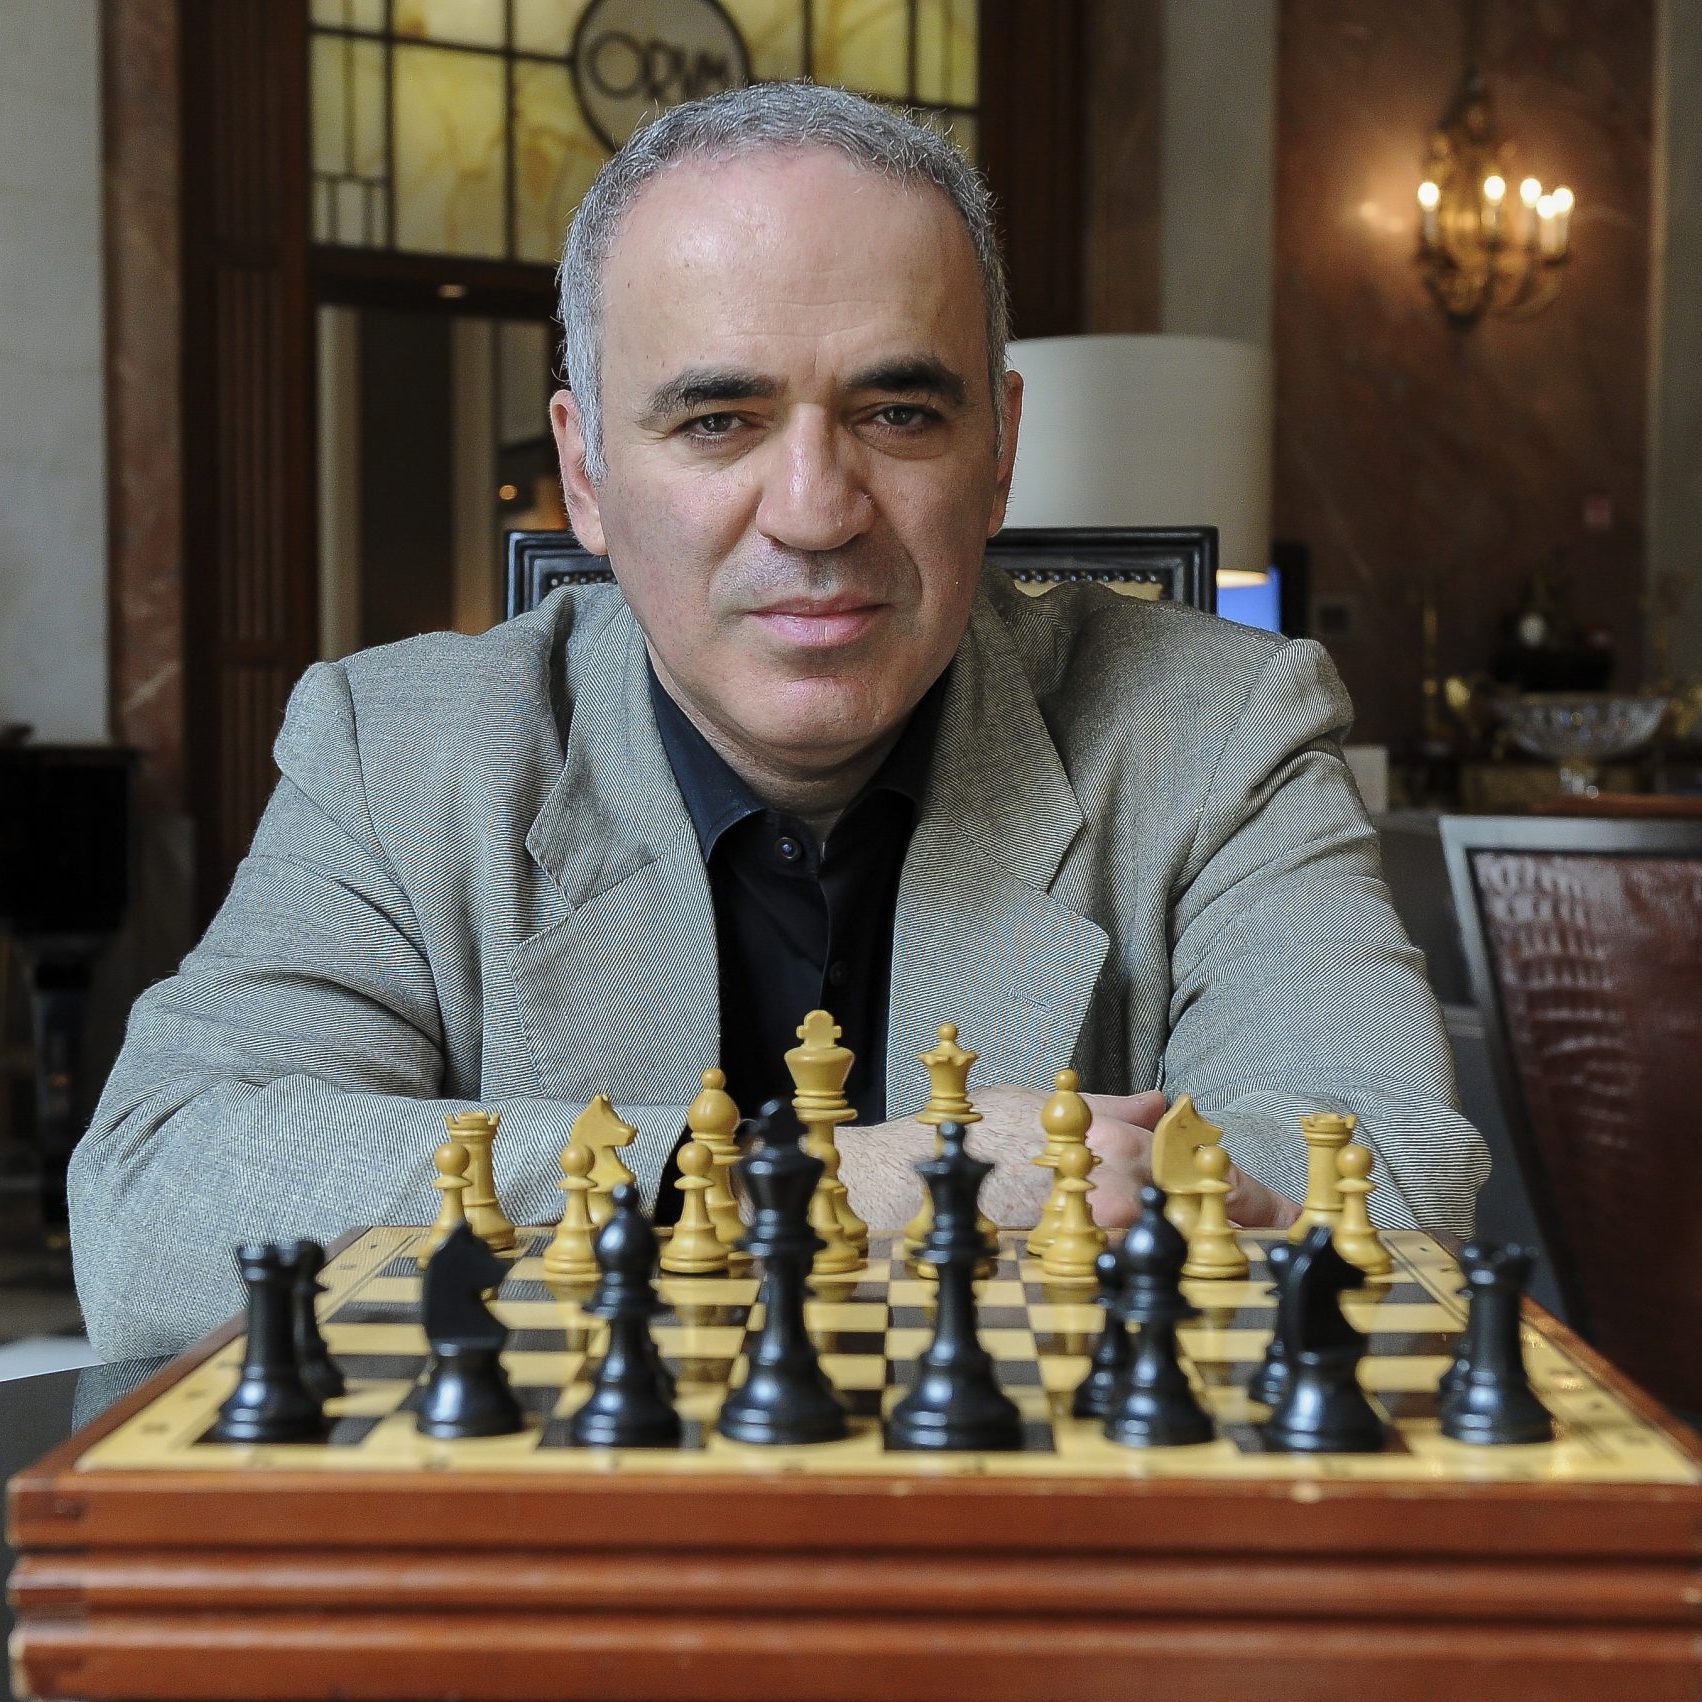 Garry Kasparov sitting with a chess board